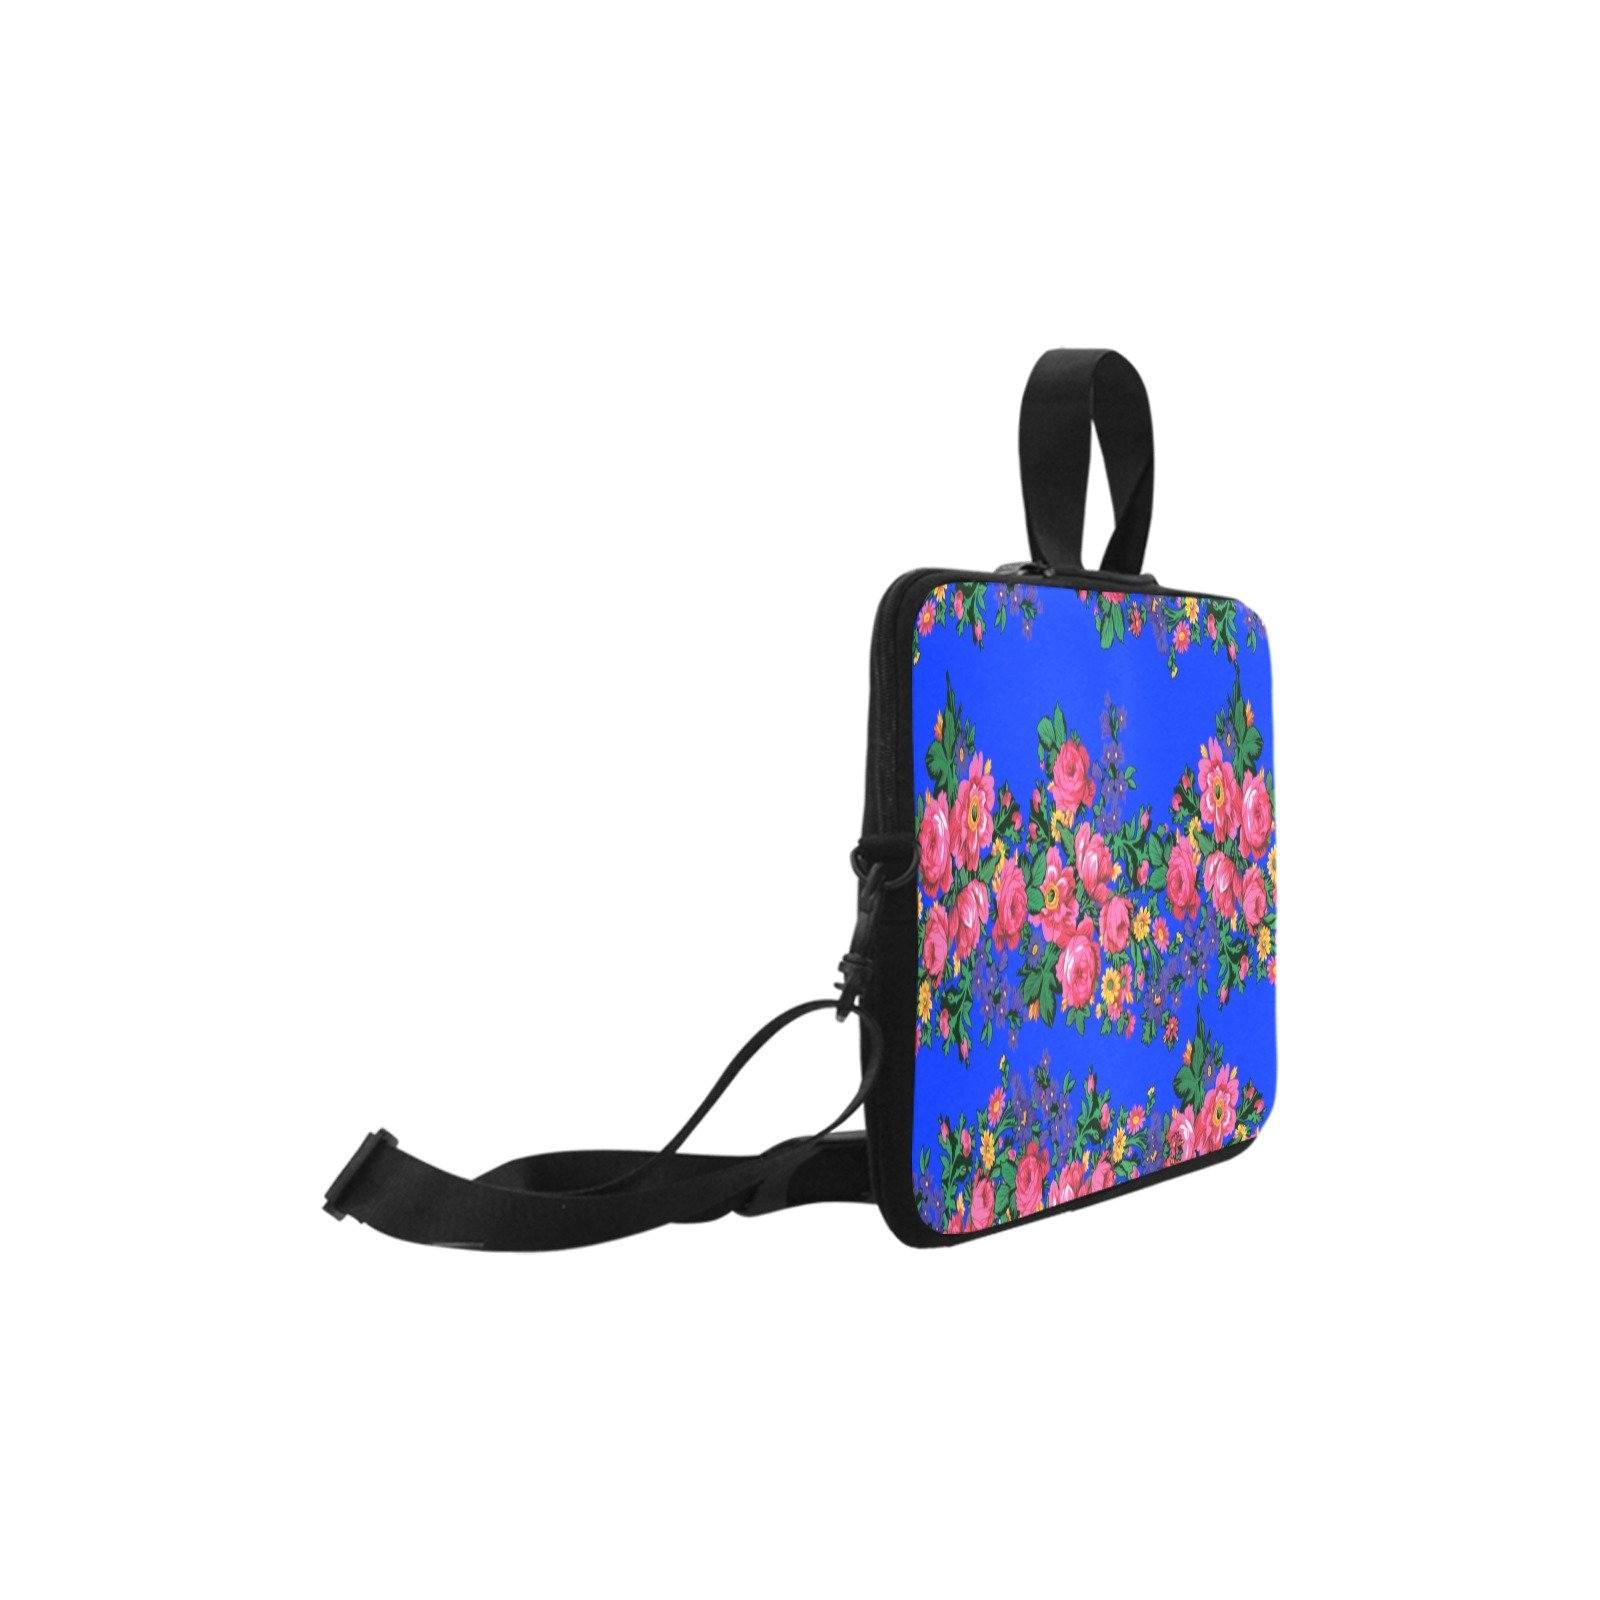 Kokum's Revenge Royal Laptop Handbags 10" bag e-joyer 